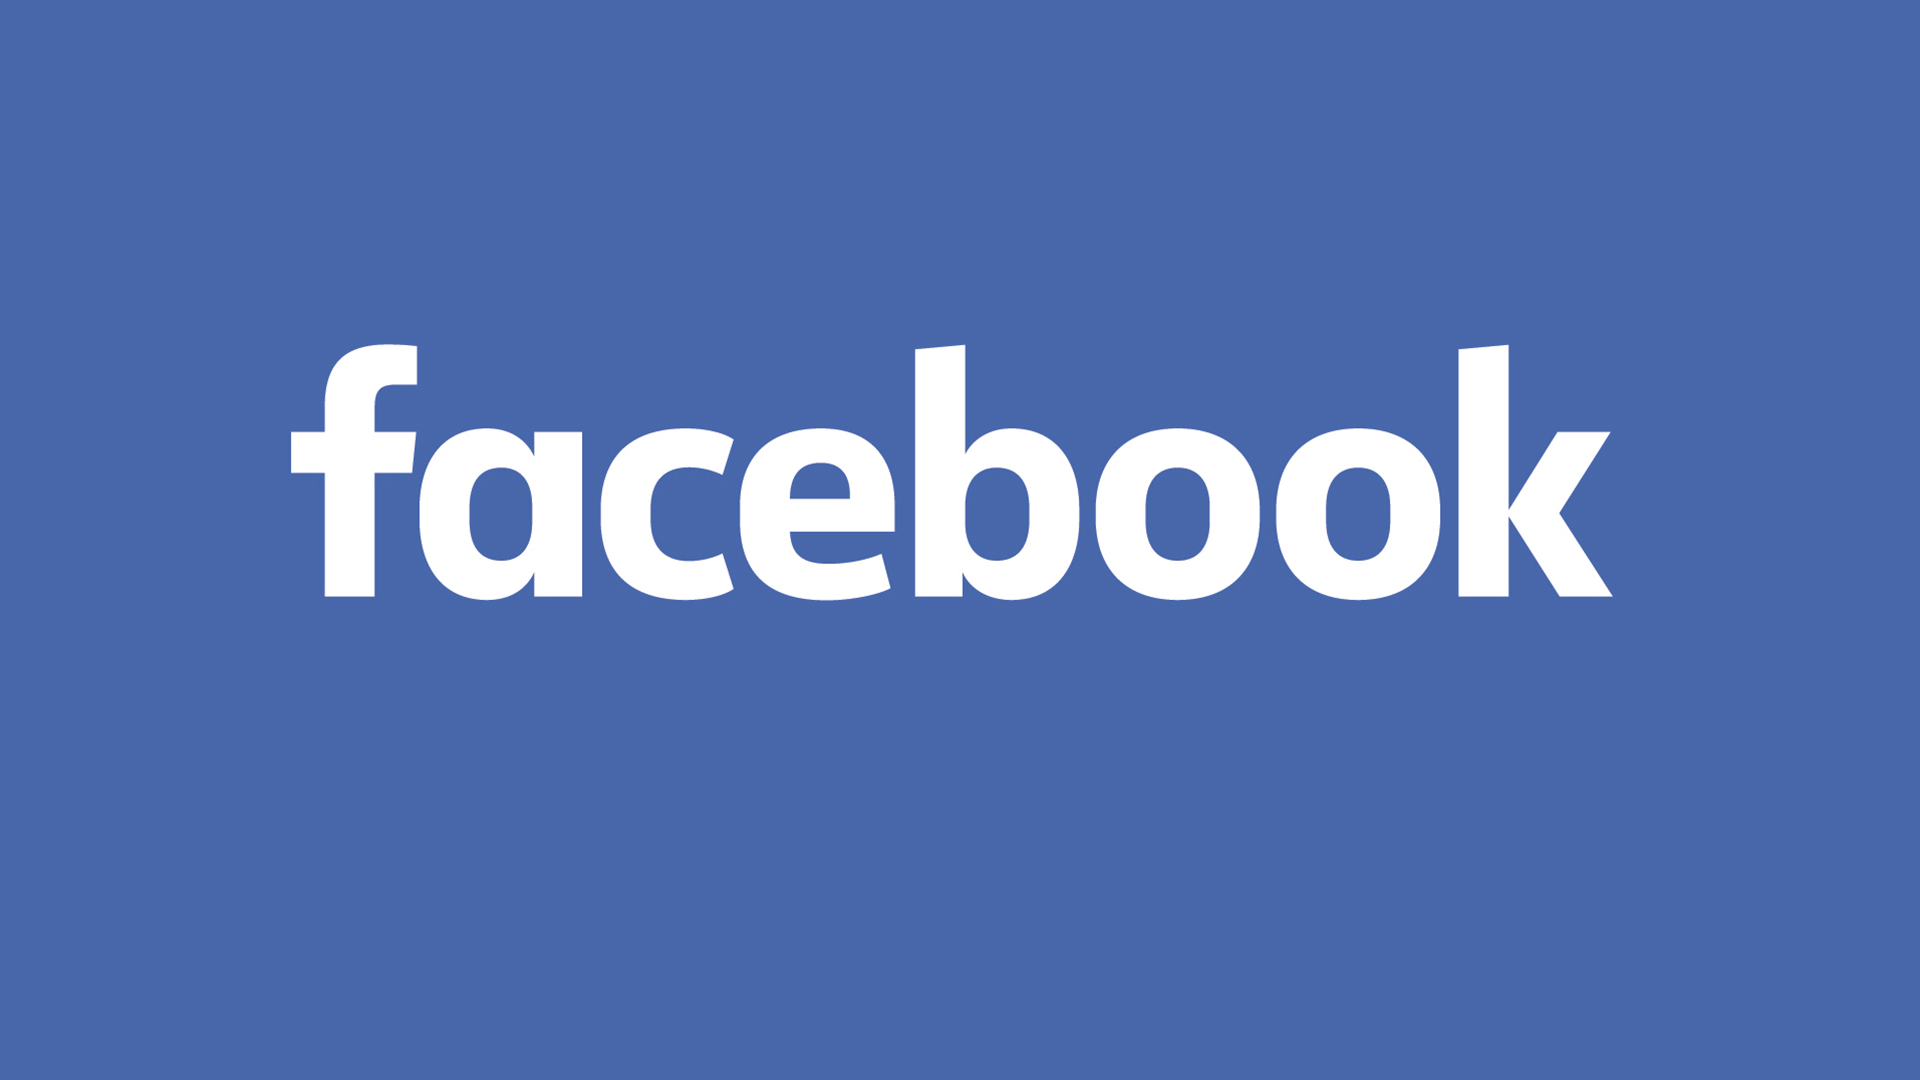 Facebok Logo - Facebook's 